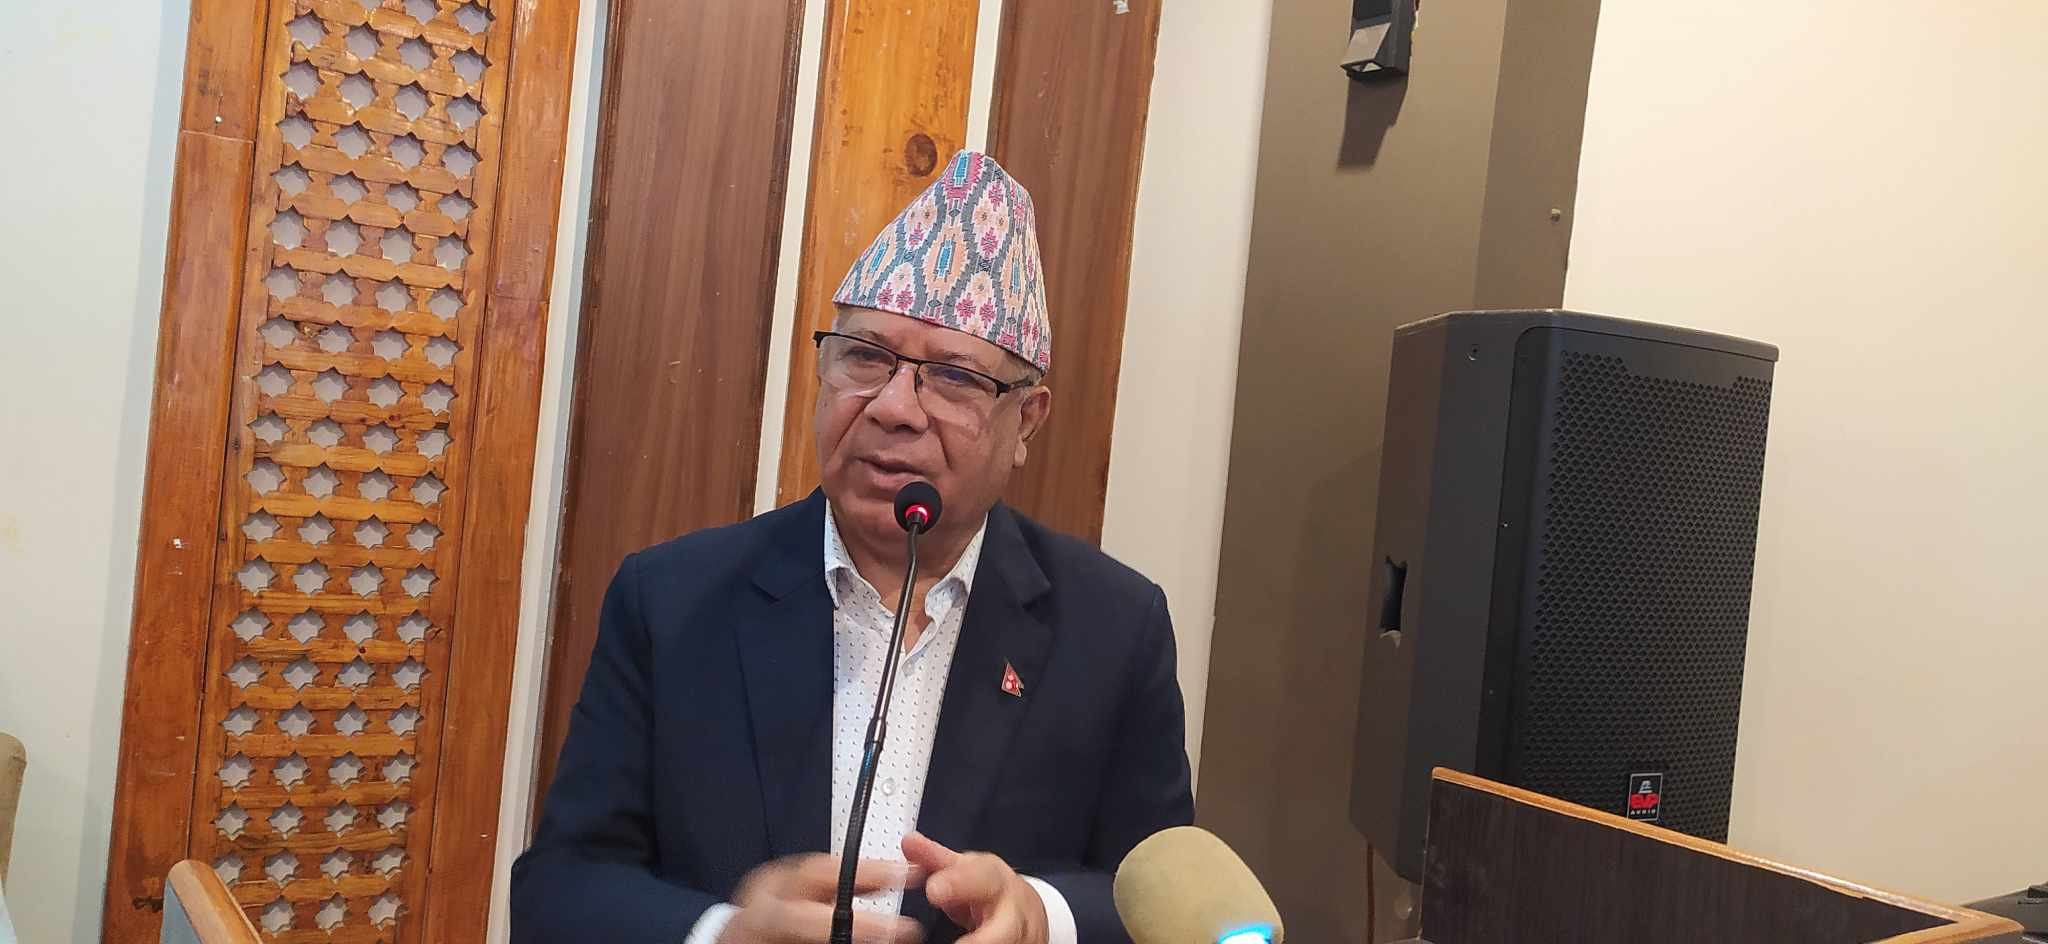 काँग्रेसबिनाको सरकार कल्पना गर्न सकिँदैन : अध्यक्ष नेपाल